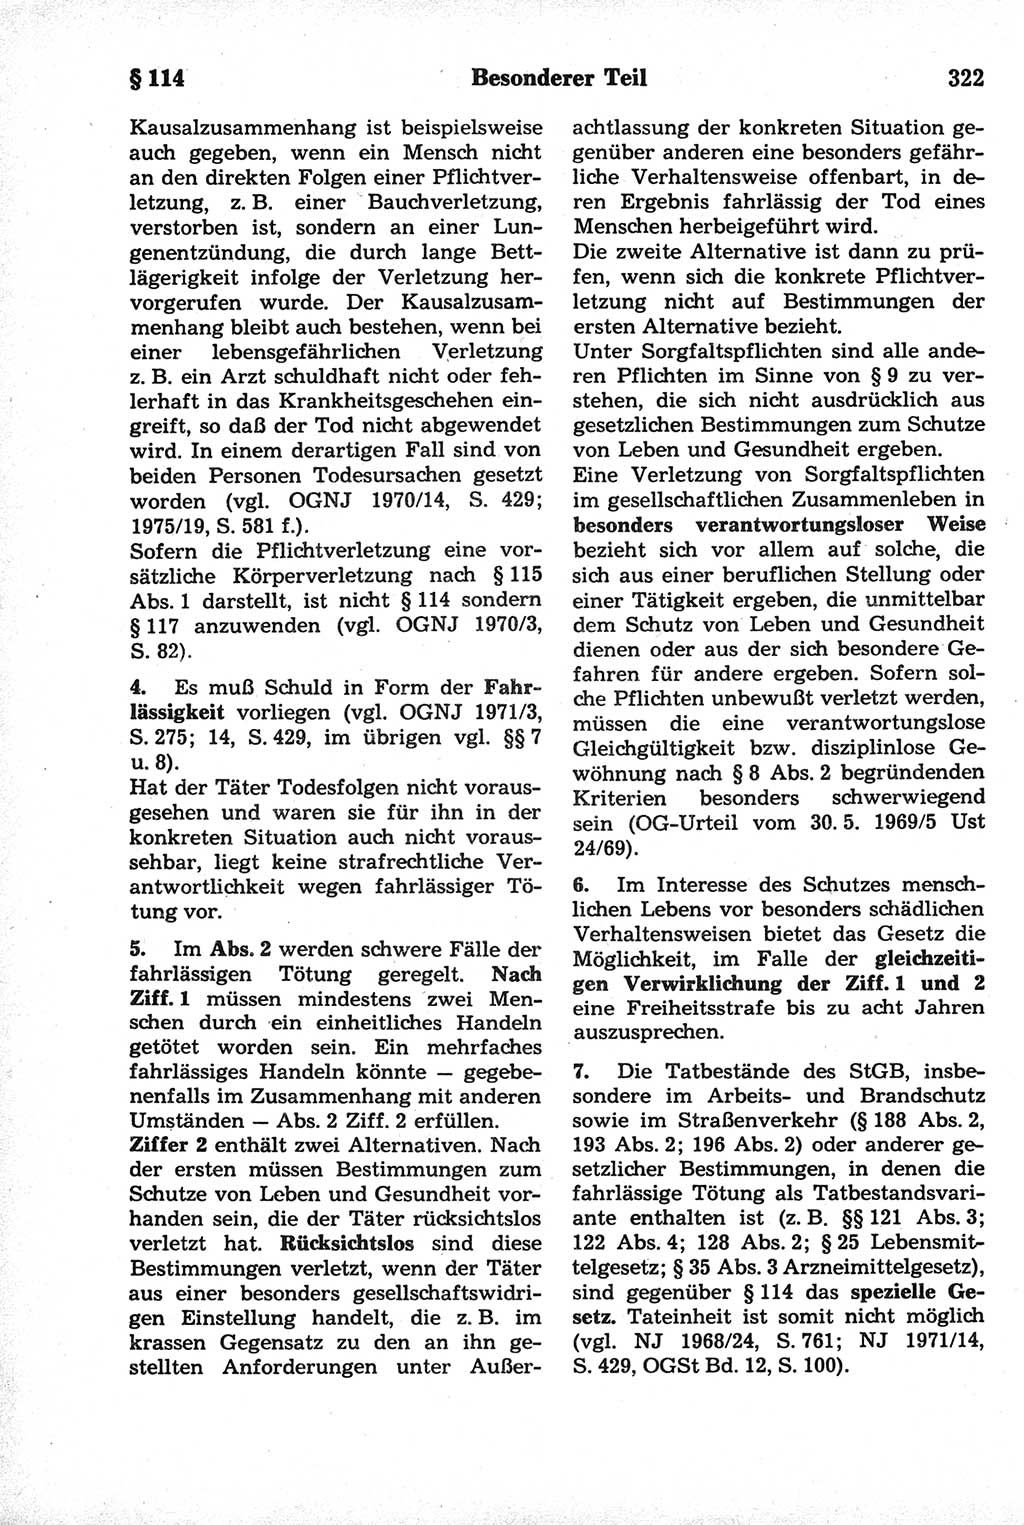 Strafrecht der Deutschen Demokratischen Republik (DDR), Kommentar zum Strafgesetzbuch (StGB) 1981, Seite 322 (Strafr. DDR Komm. StGB 1981, S. 322)